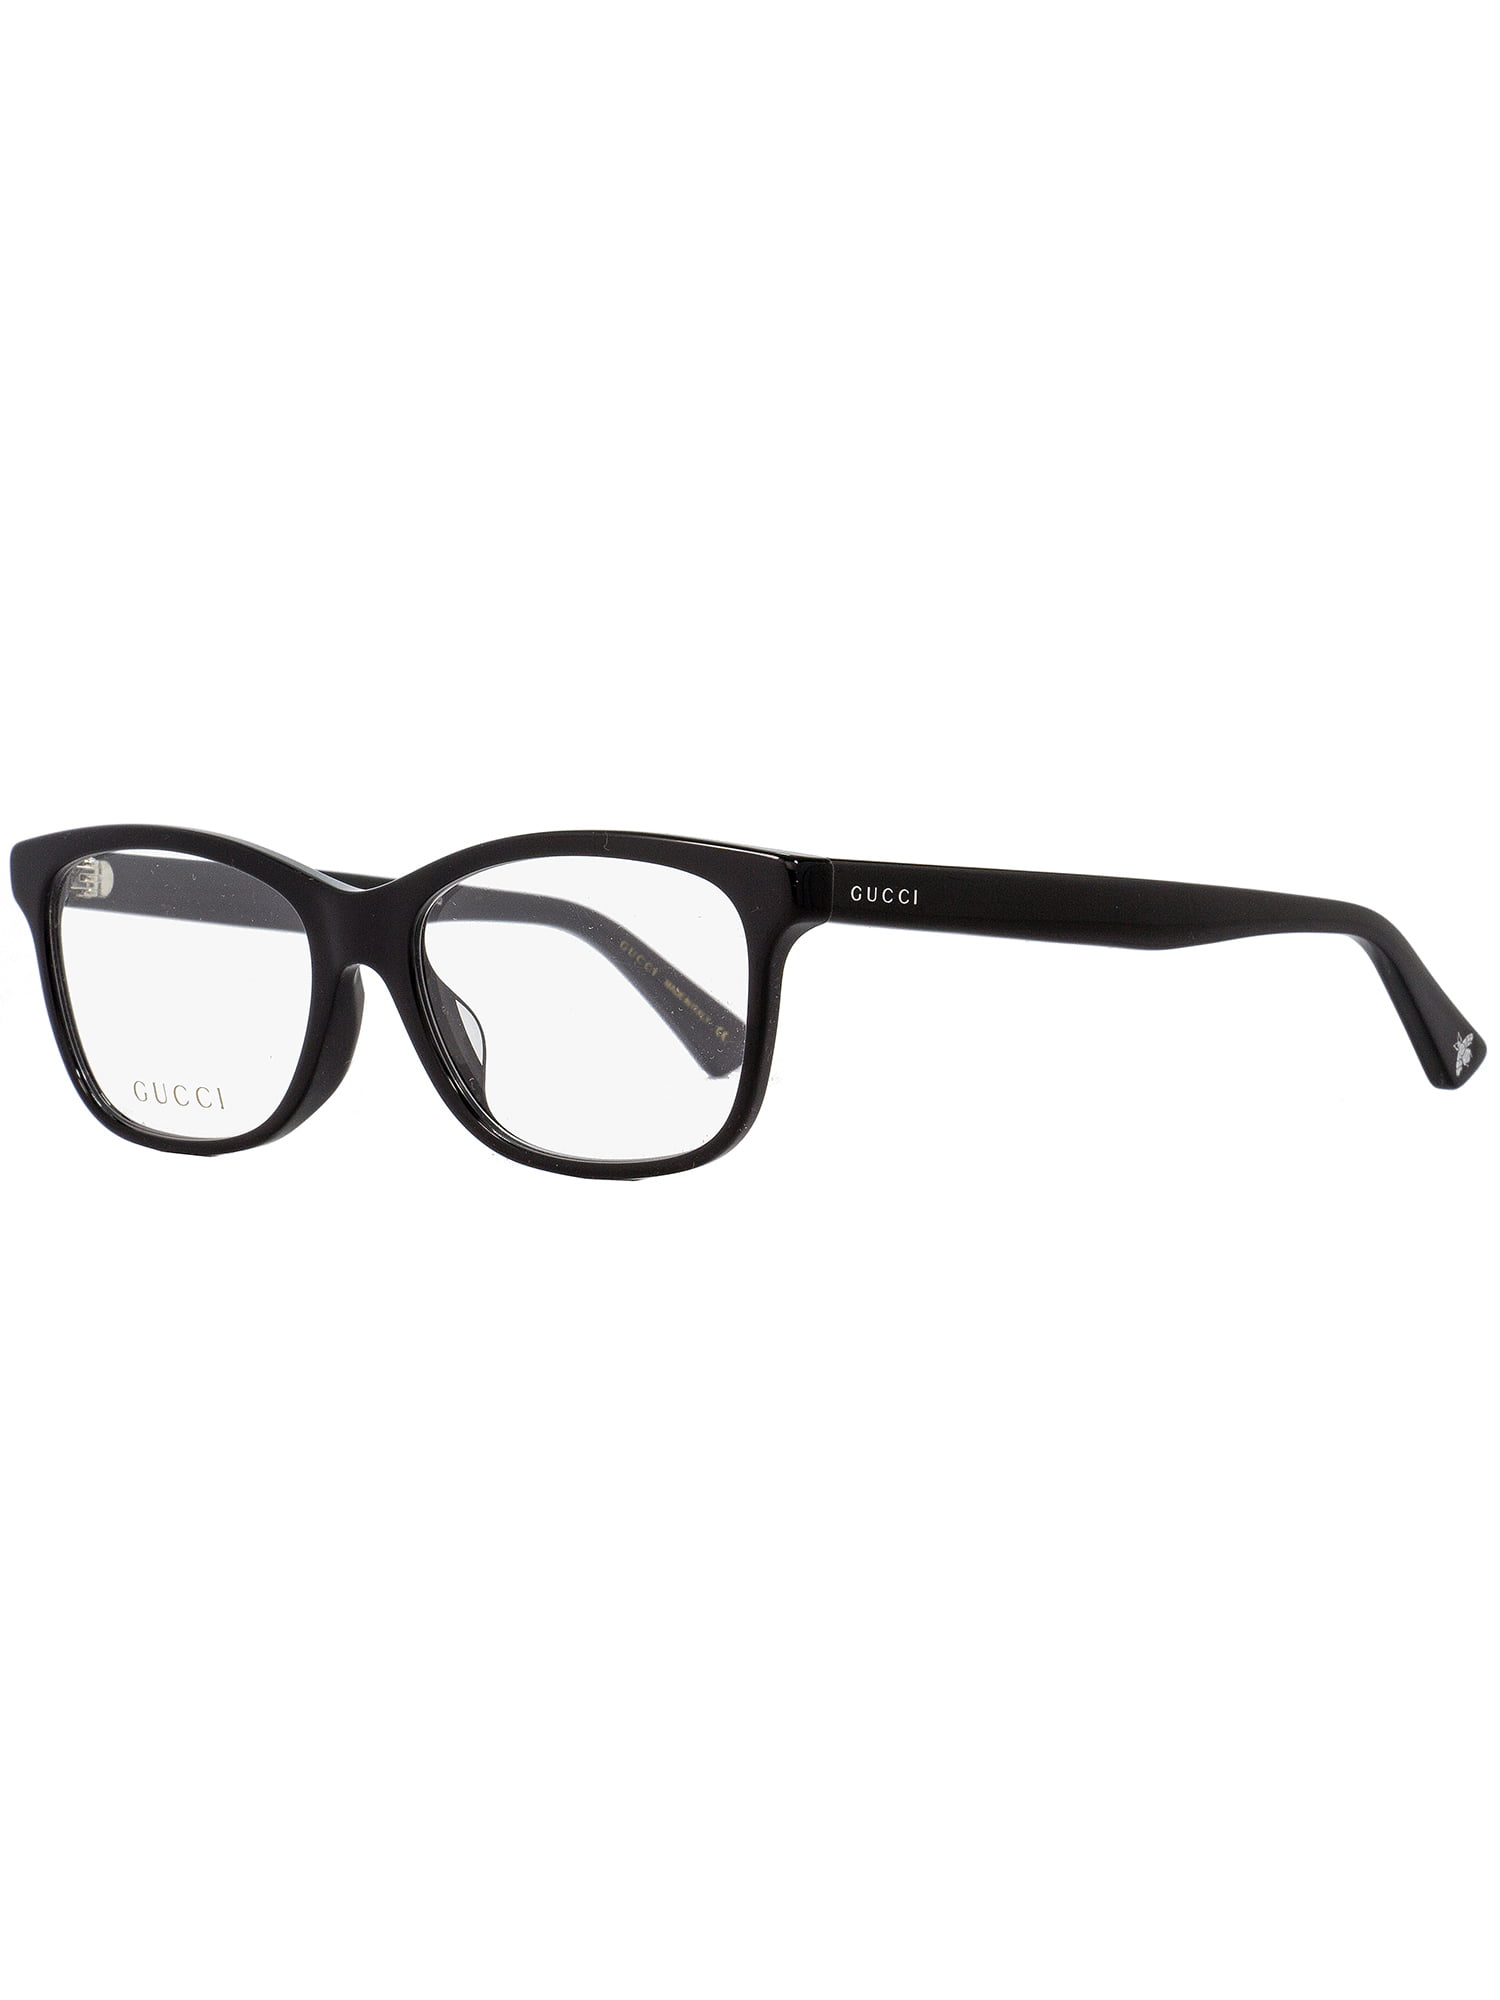 black gucci glasses